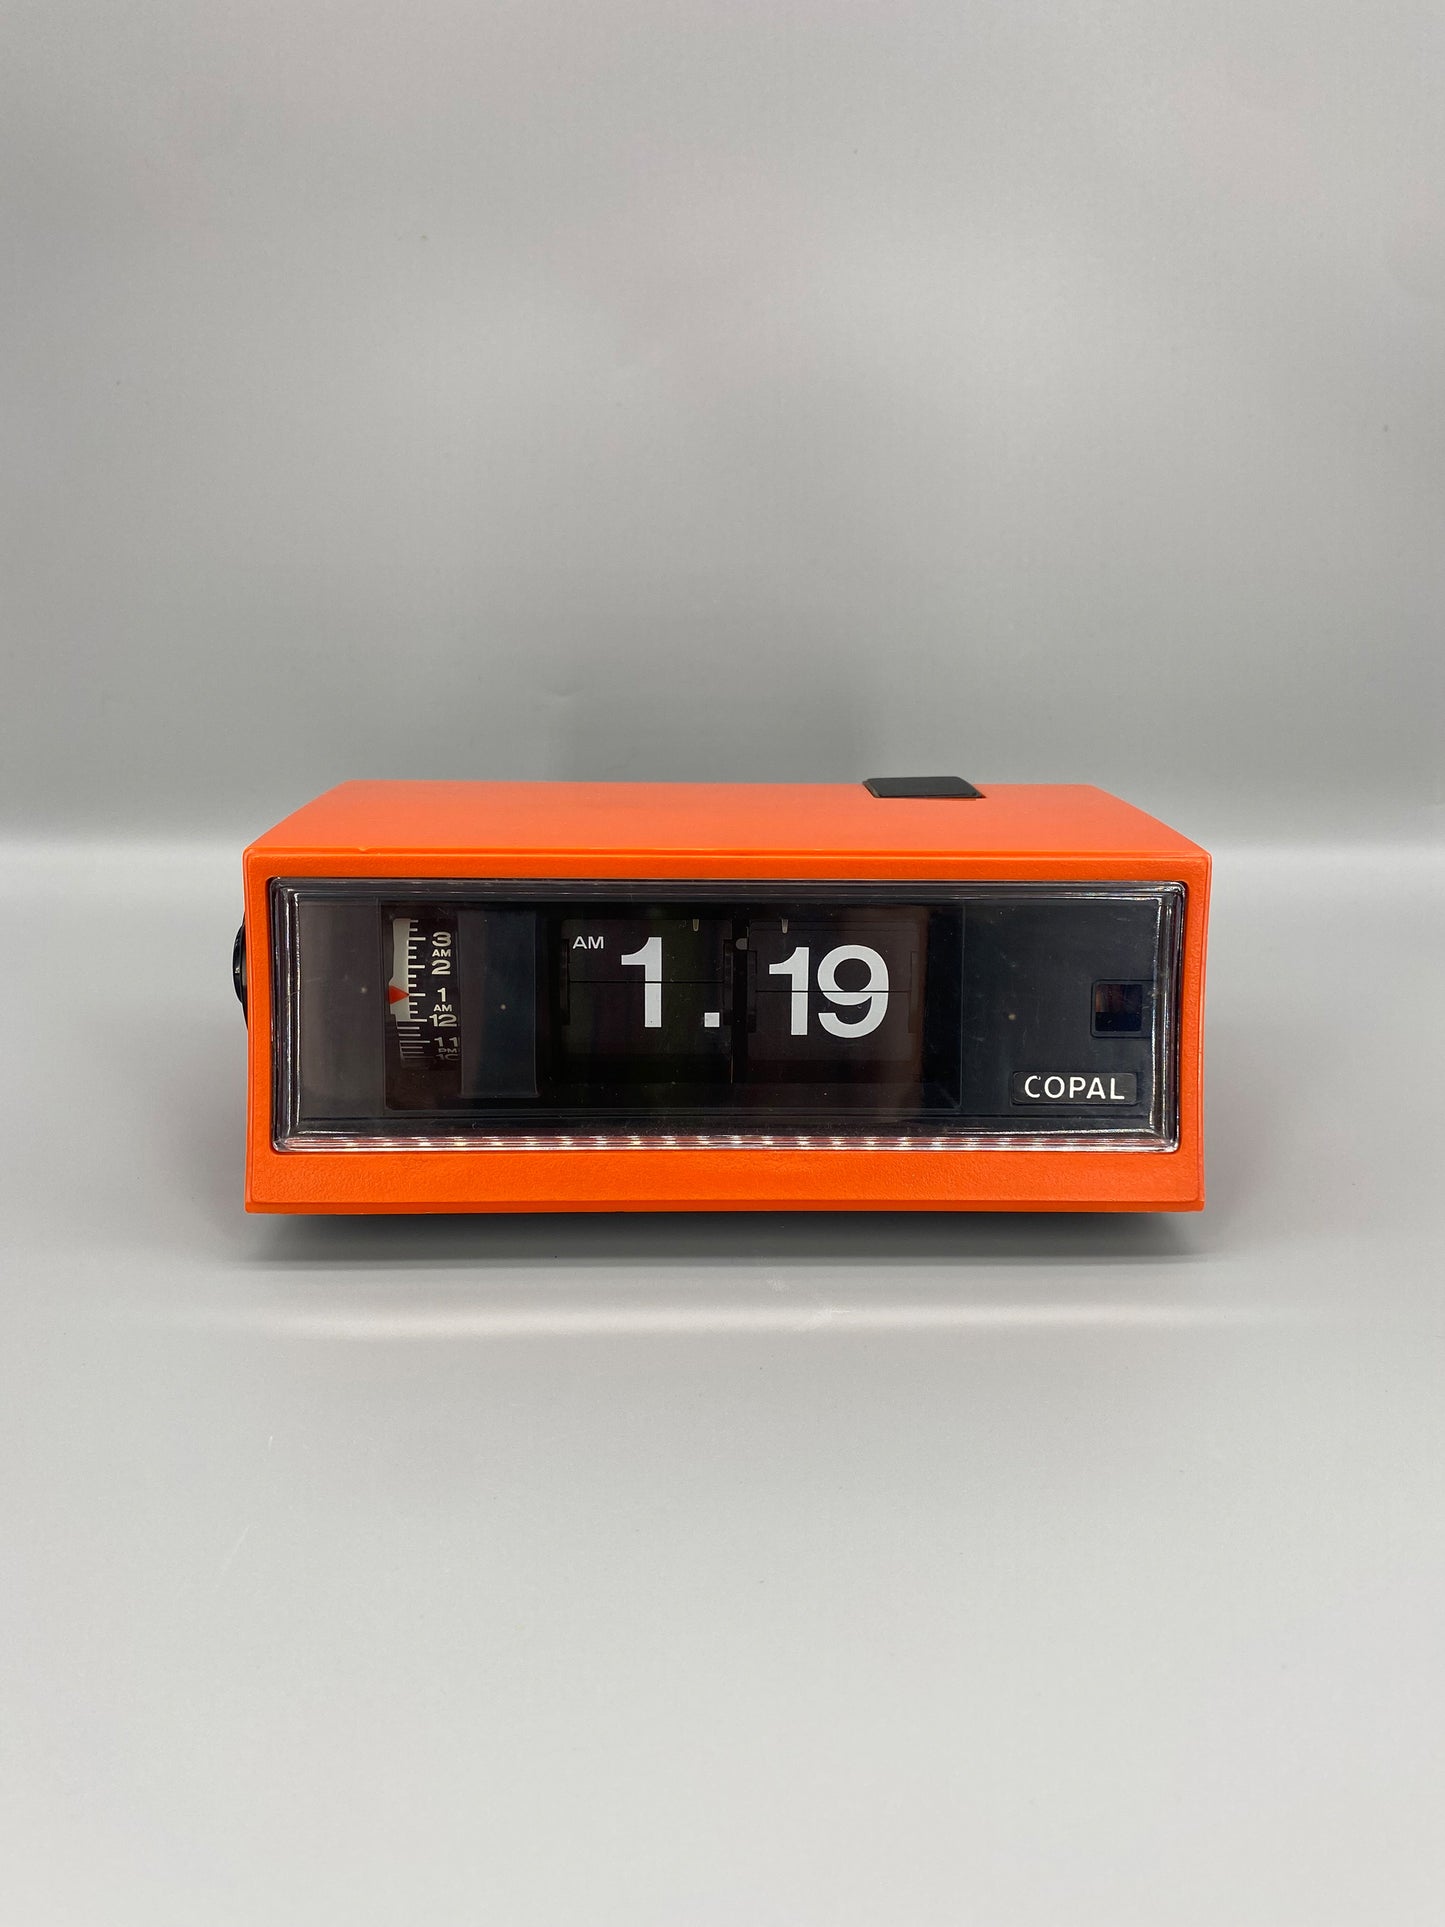 日本制 70s Copal RP-200 Digital Alarm Flip Clock 翻頁鐘 有盒